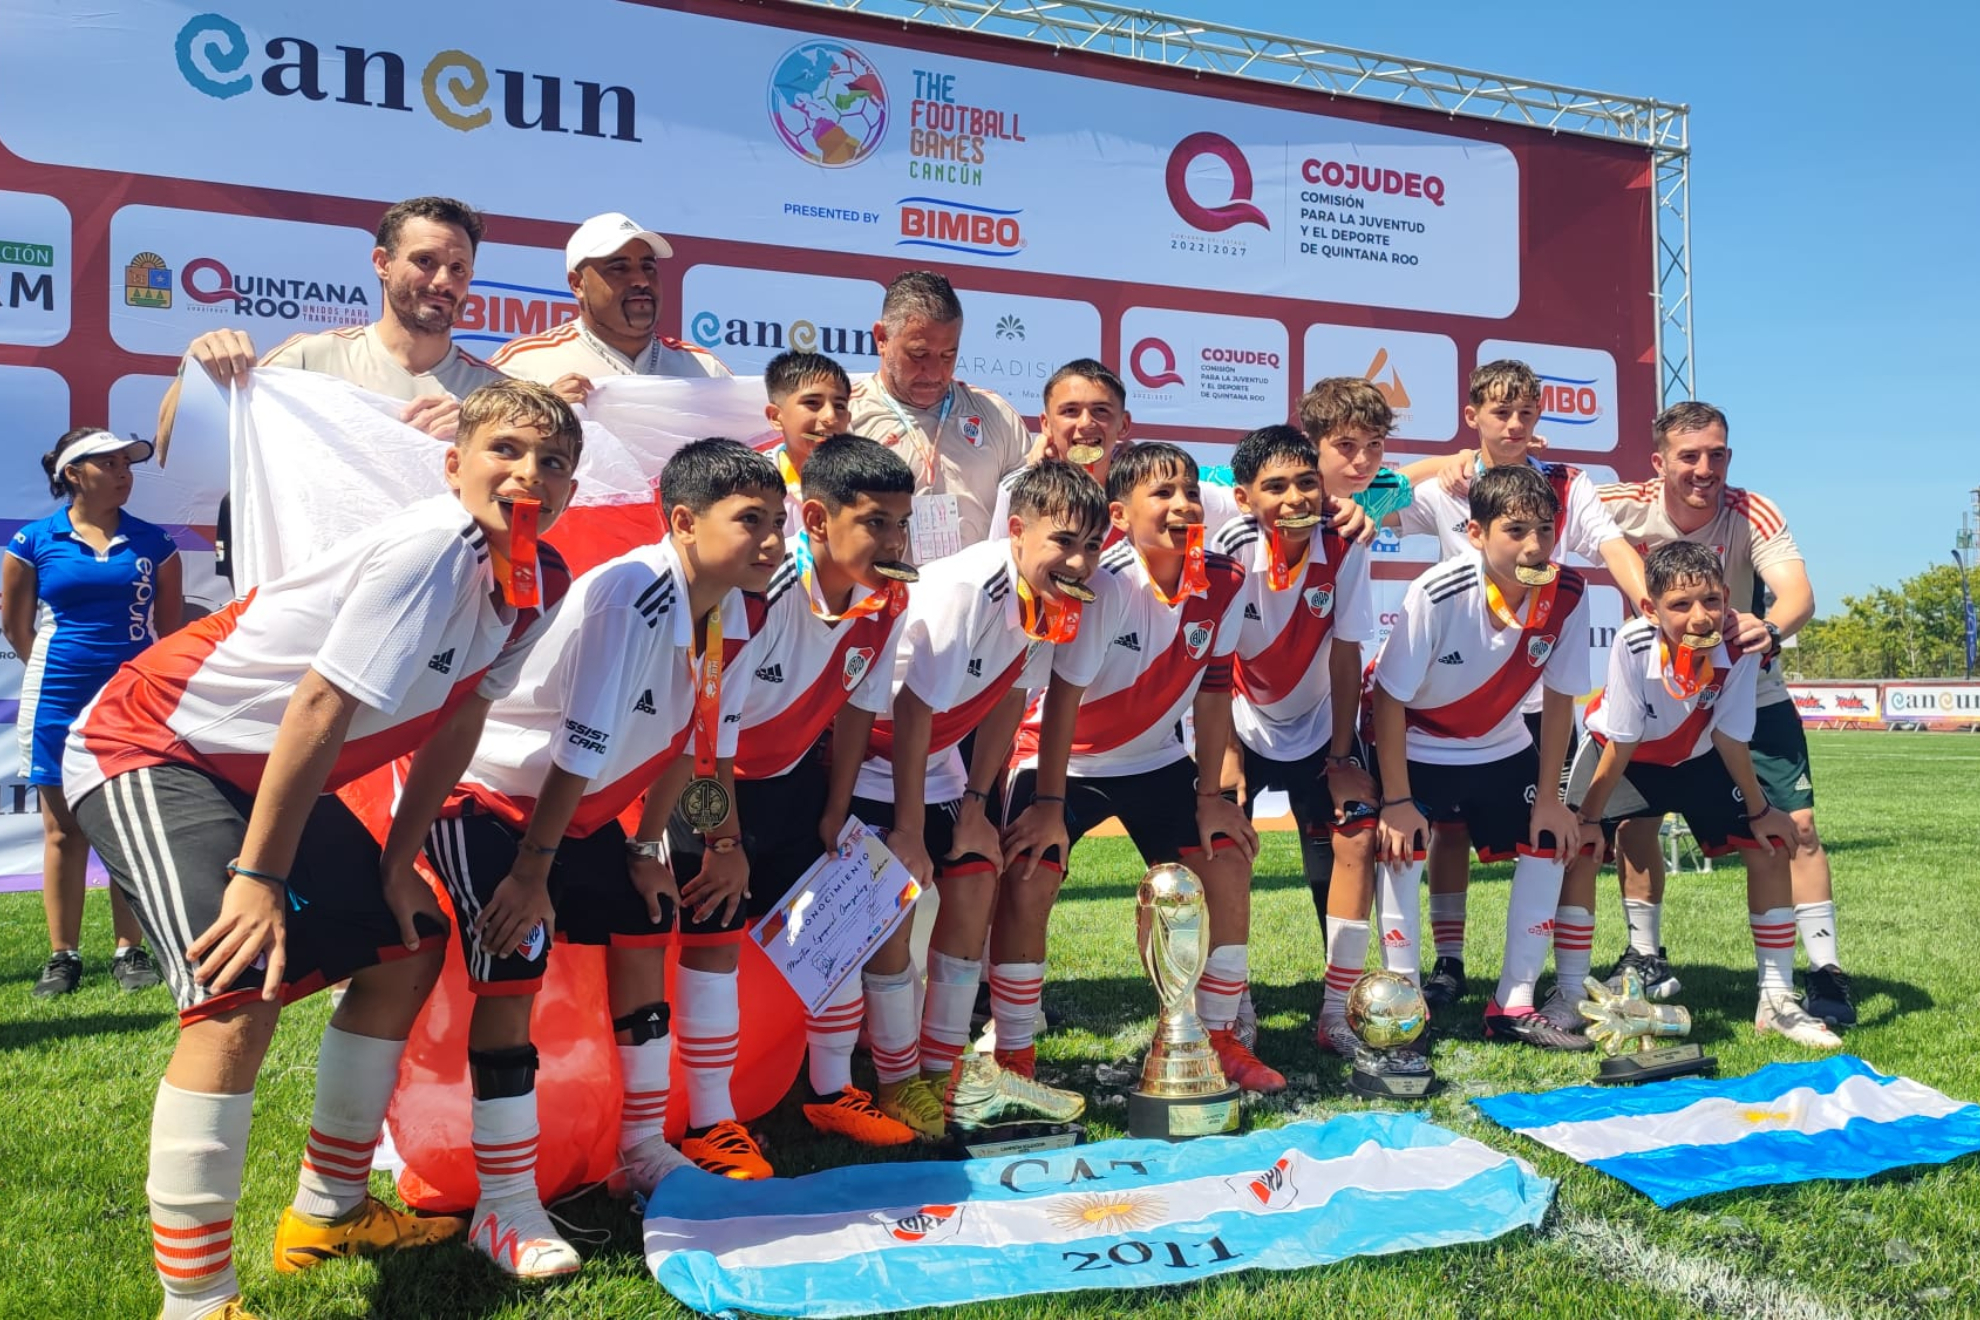 River Plate, campeón de 'The Football Games'